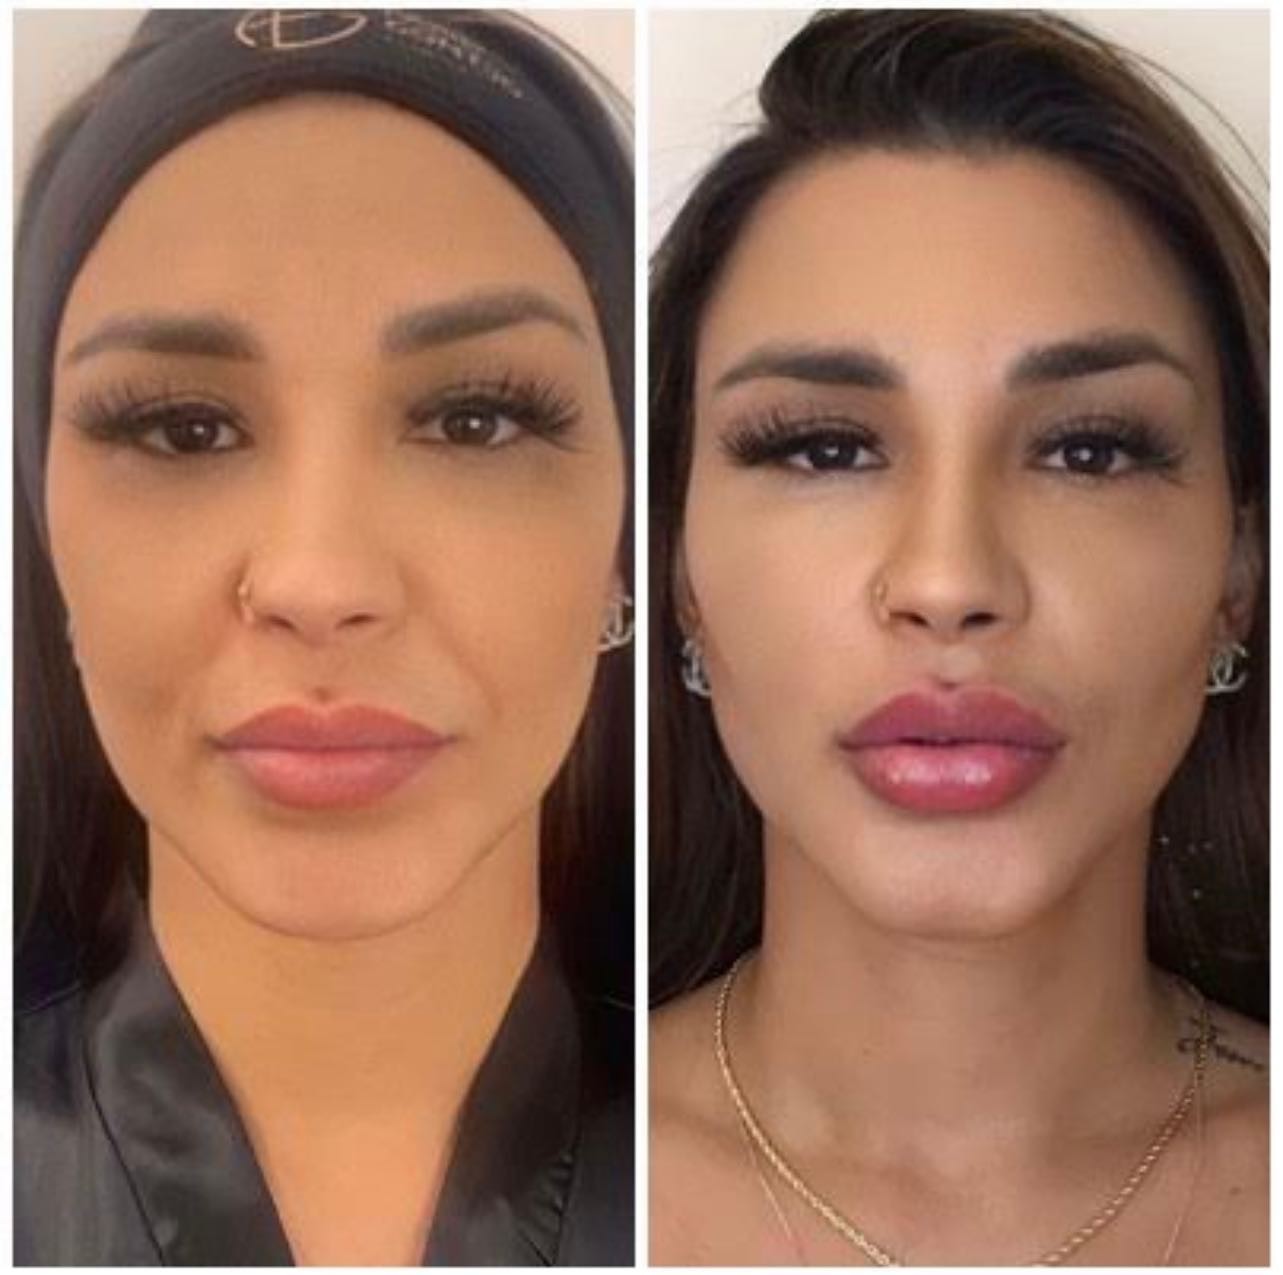 Jenny Miranda mostra resultado de harmonização facial no Instagram — Foto: Reprodução / Instagram